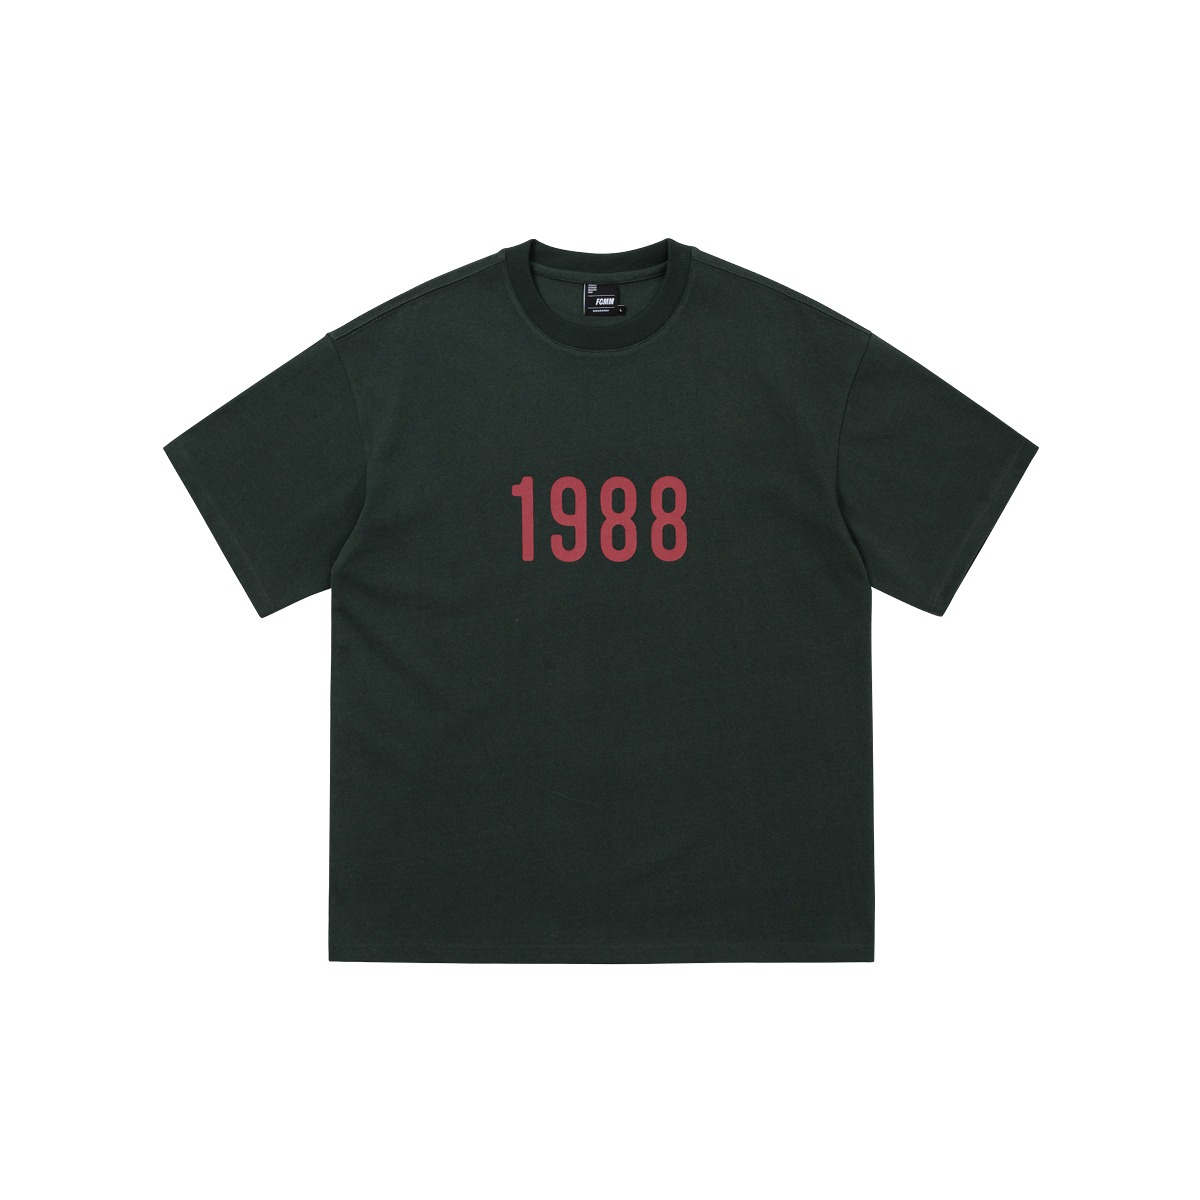 1988 레트로 티셔츠 - 다크 그린